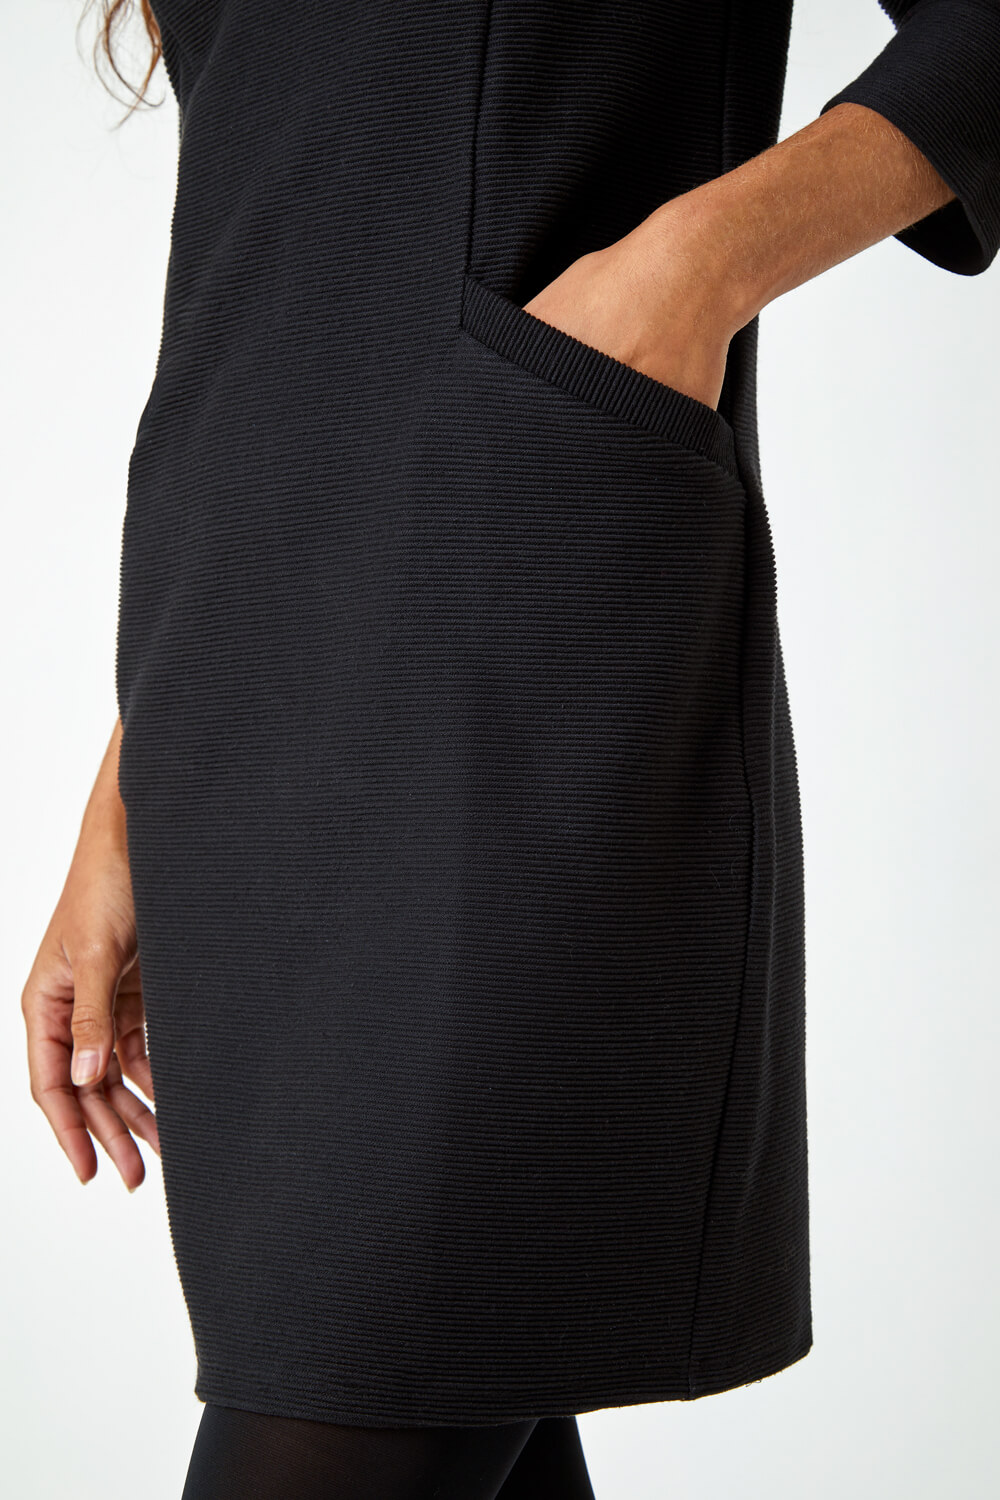 Black Ribbed Pocket Detail Shift Stretch Dress, Image 5 of 5